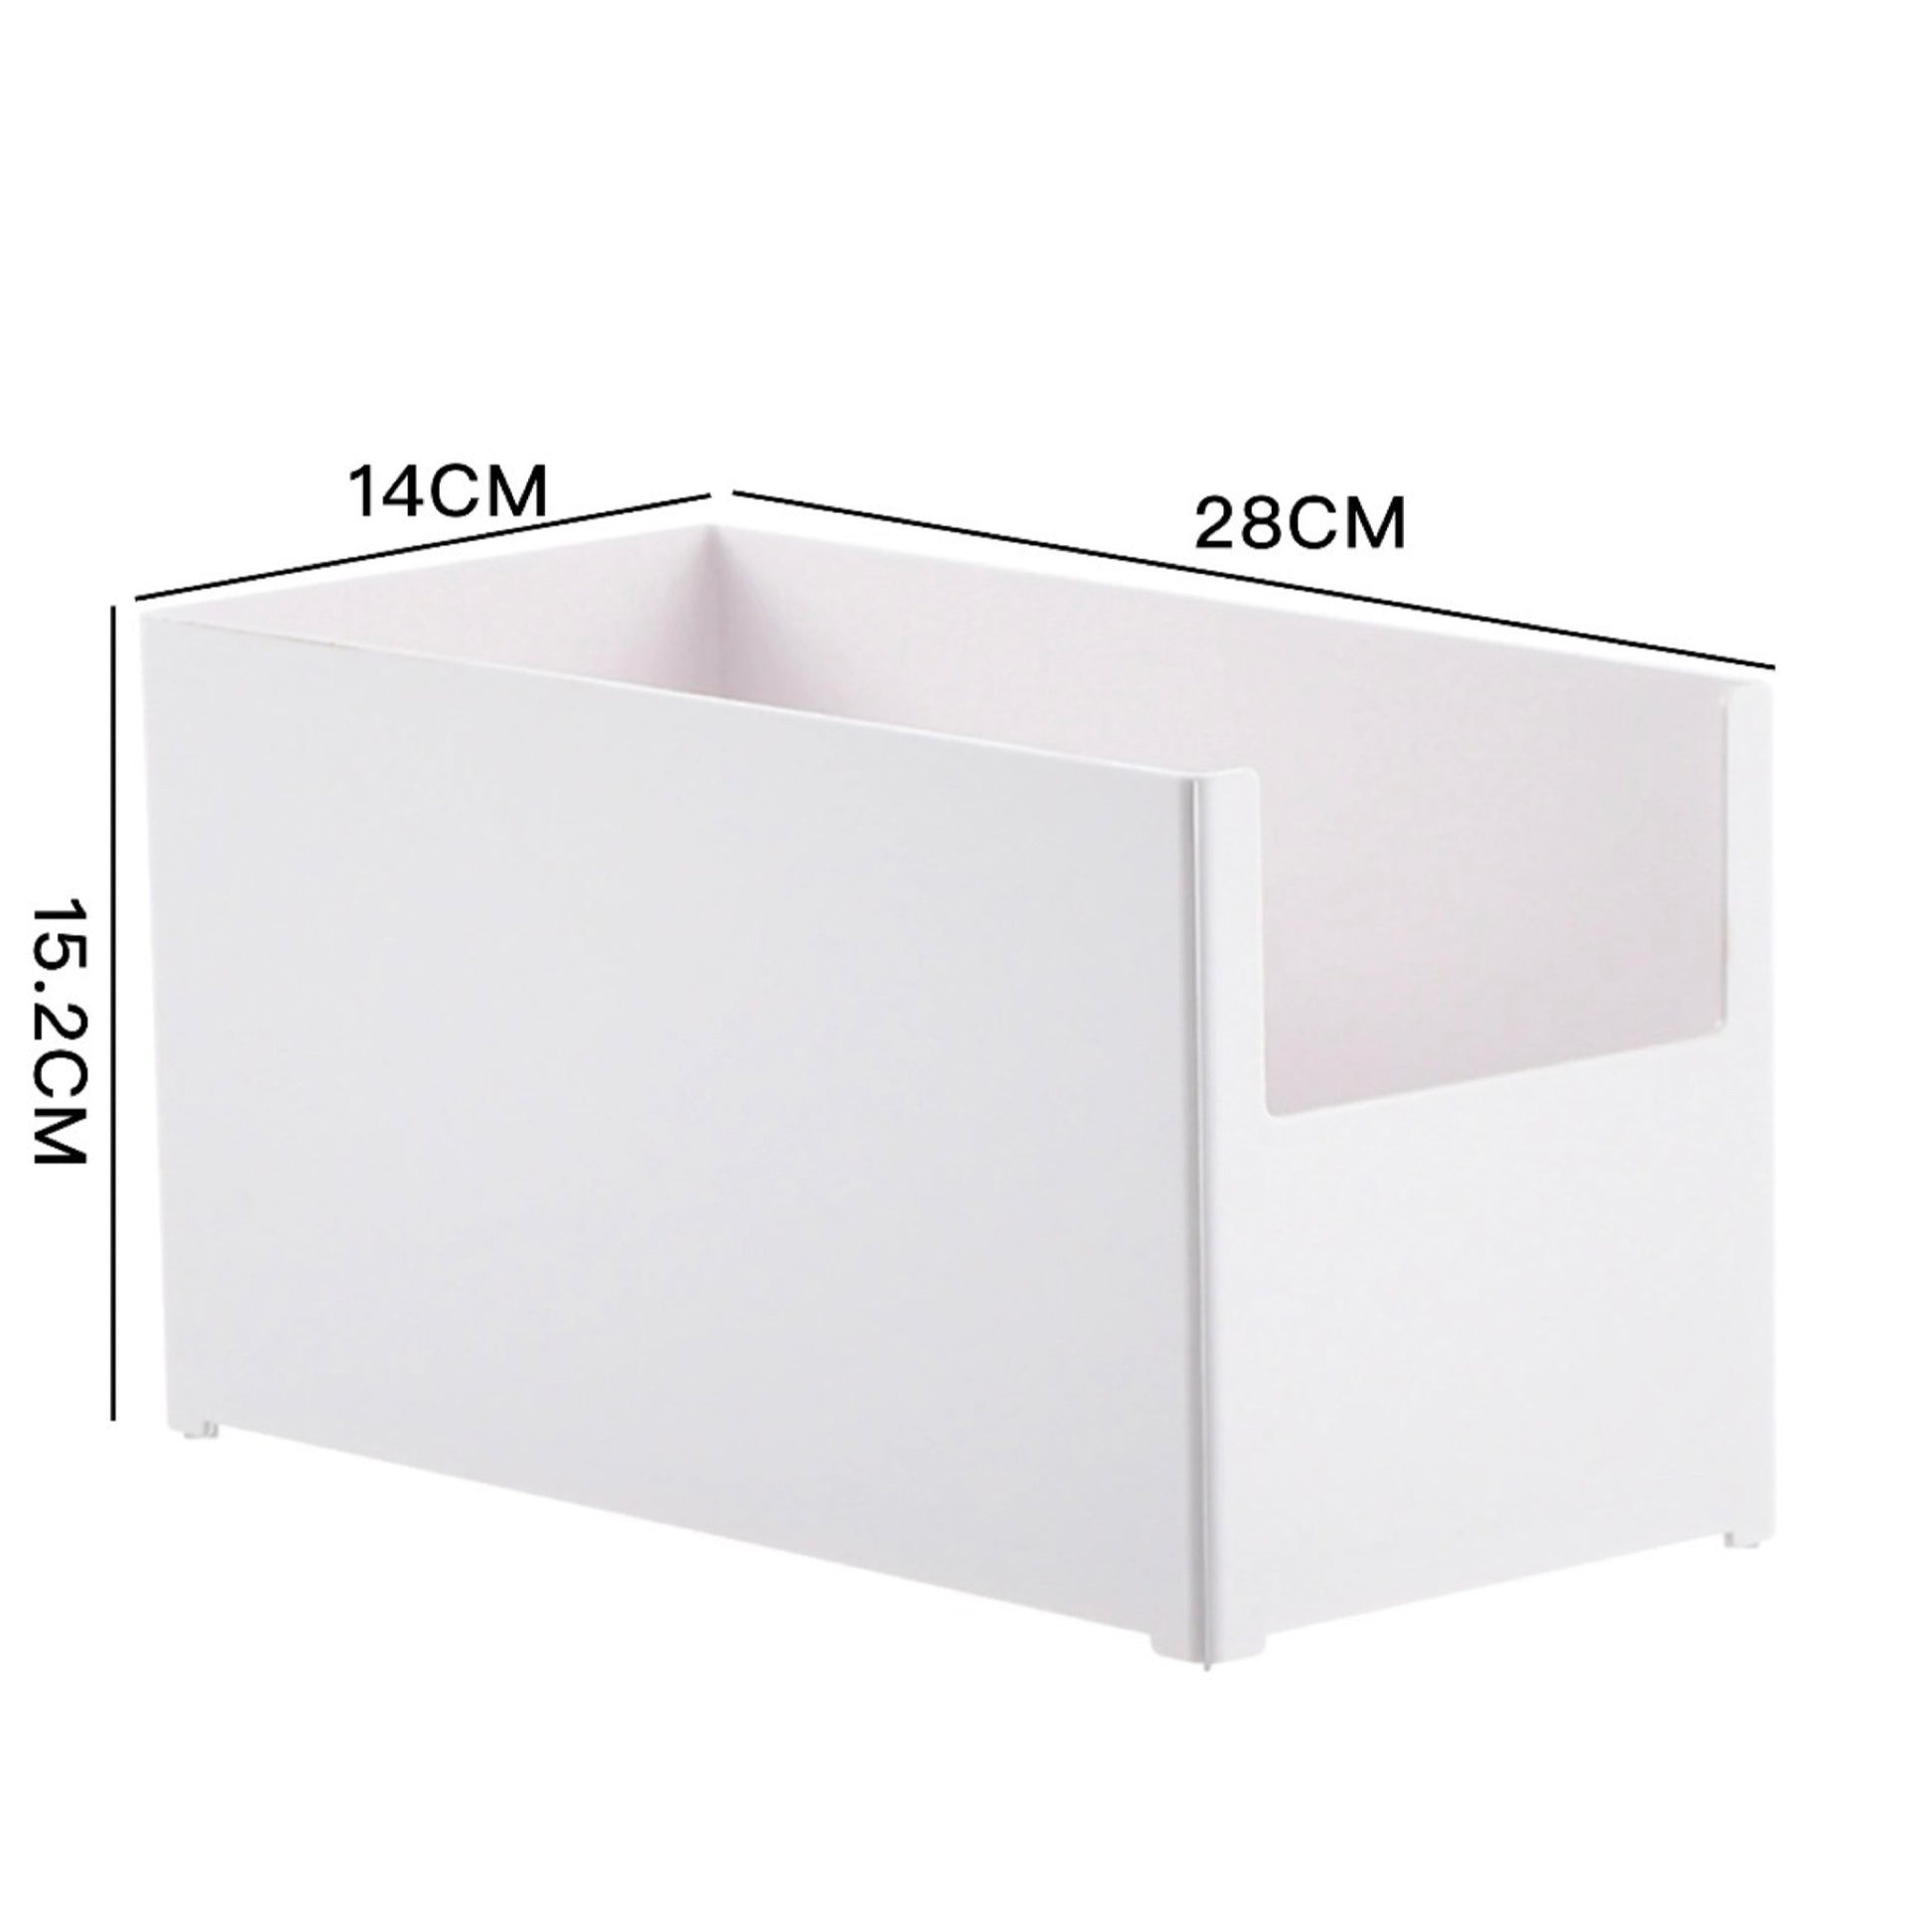 Moderne, weiße Aufbewahrungsbox mit einer halboffenen Seite und den Maßen 28 cm Länge, 14 cm Breite und 15,2 cm Höhe. Ihr Design ist minimalistisch und funktionell, geeignet für die Organisation und das ordentliche Verstauen von Gegenständen in jedem Wohnbereich.